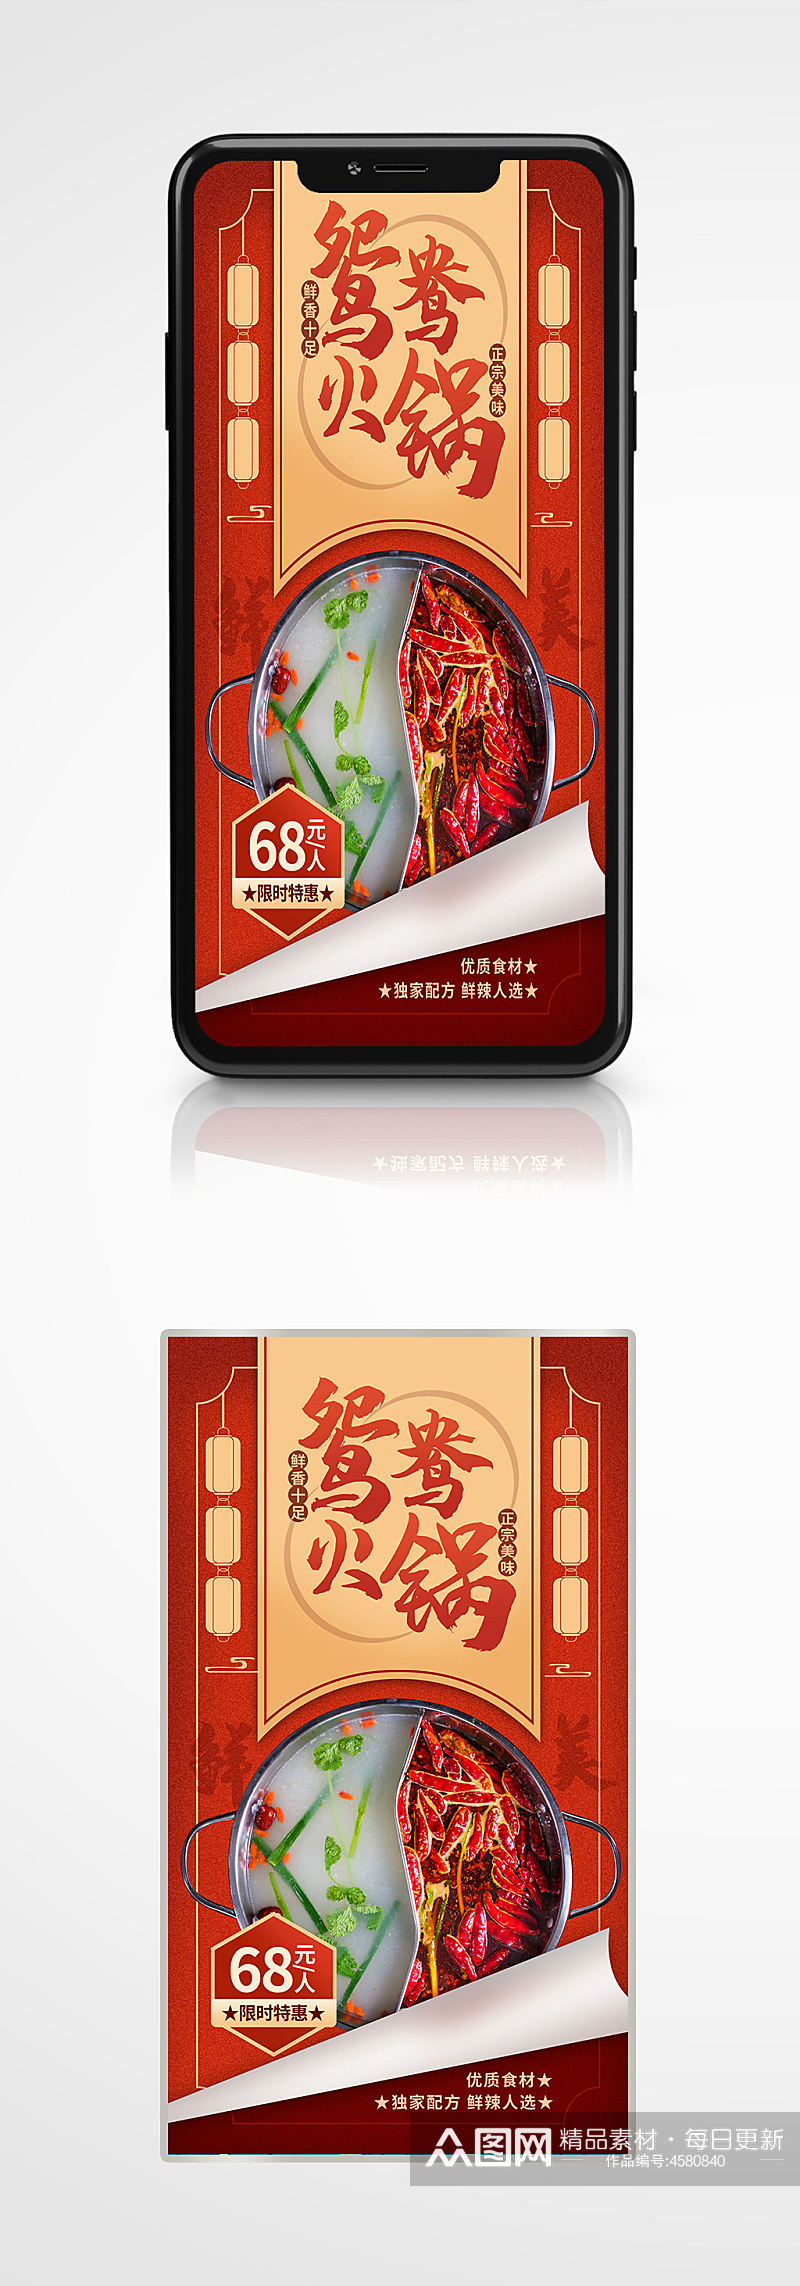 春节火锅促销营销手机海报鸳鸯锅餐厅素材